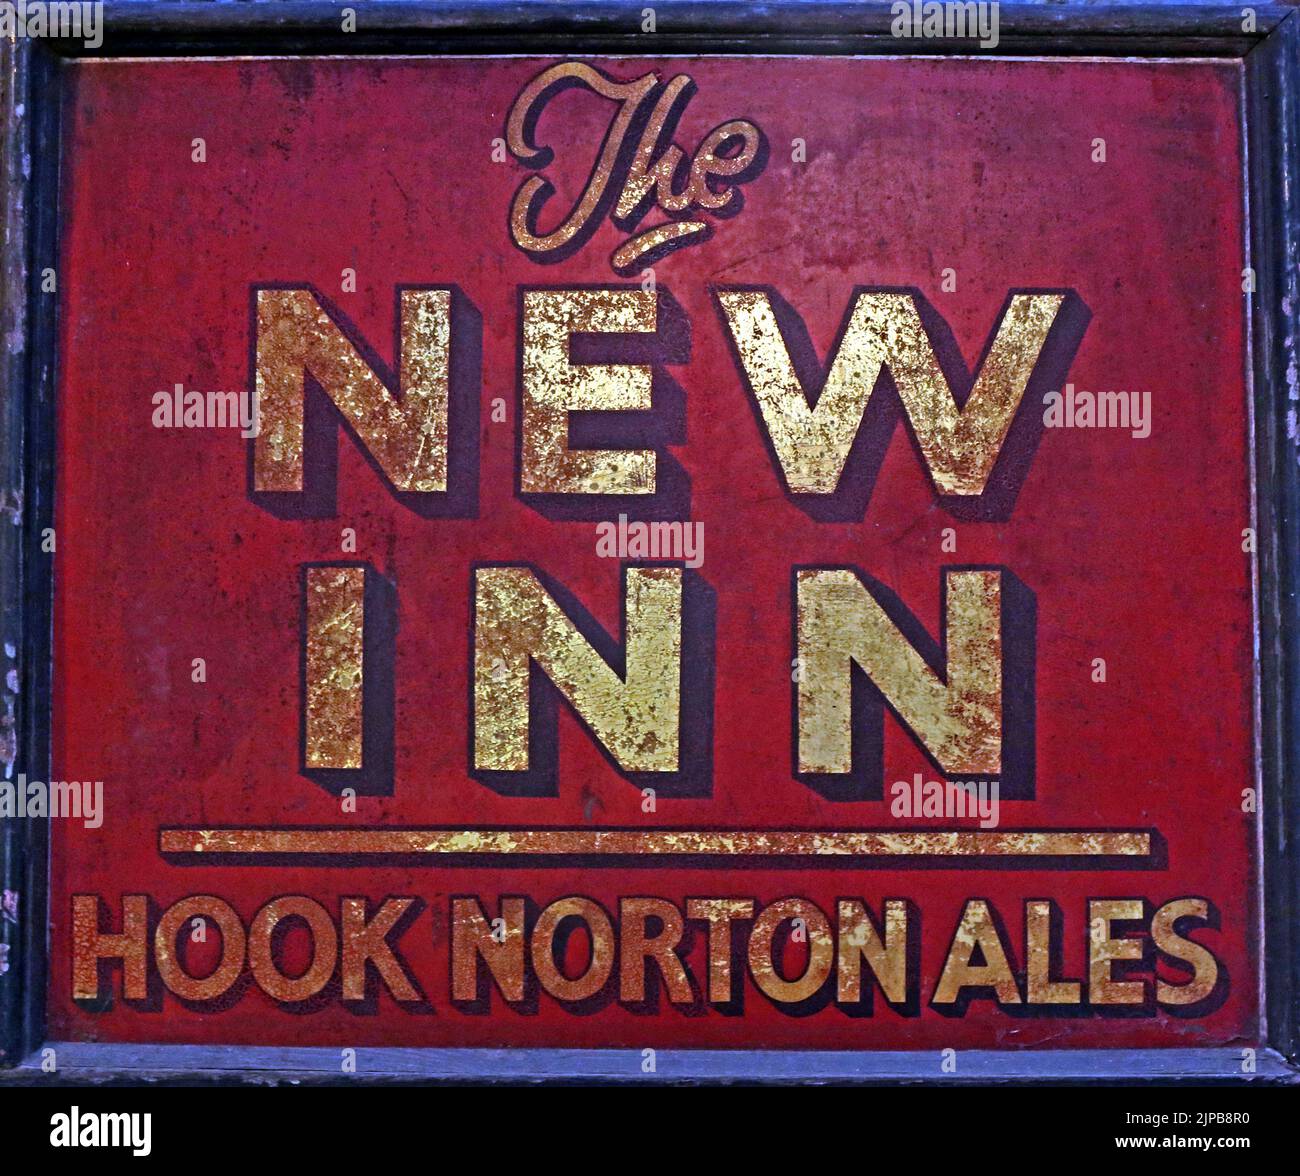 The New Inn - Hook Norton Ales panneau de pub classique, Oxfordshire artisanat ales, Hook Norton, Banbury, Oxen, ANGLETERRE, ROYAUME-UNI, OX15 5NY Banque D'Images